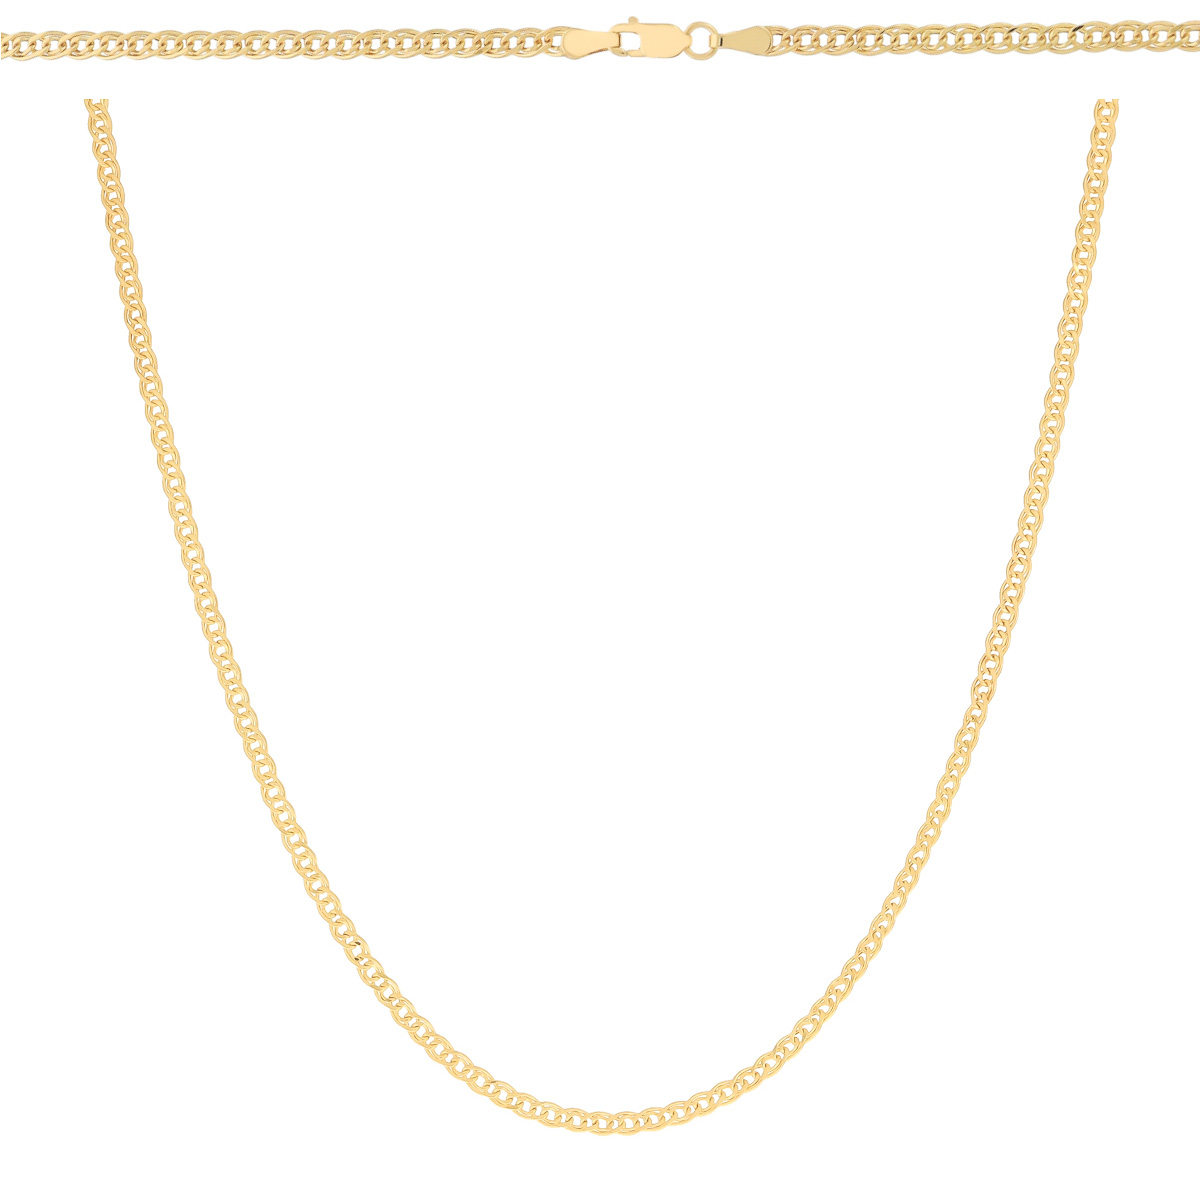 Złoty łańcuszek Mona lisa 50 cm złoto próby 585